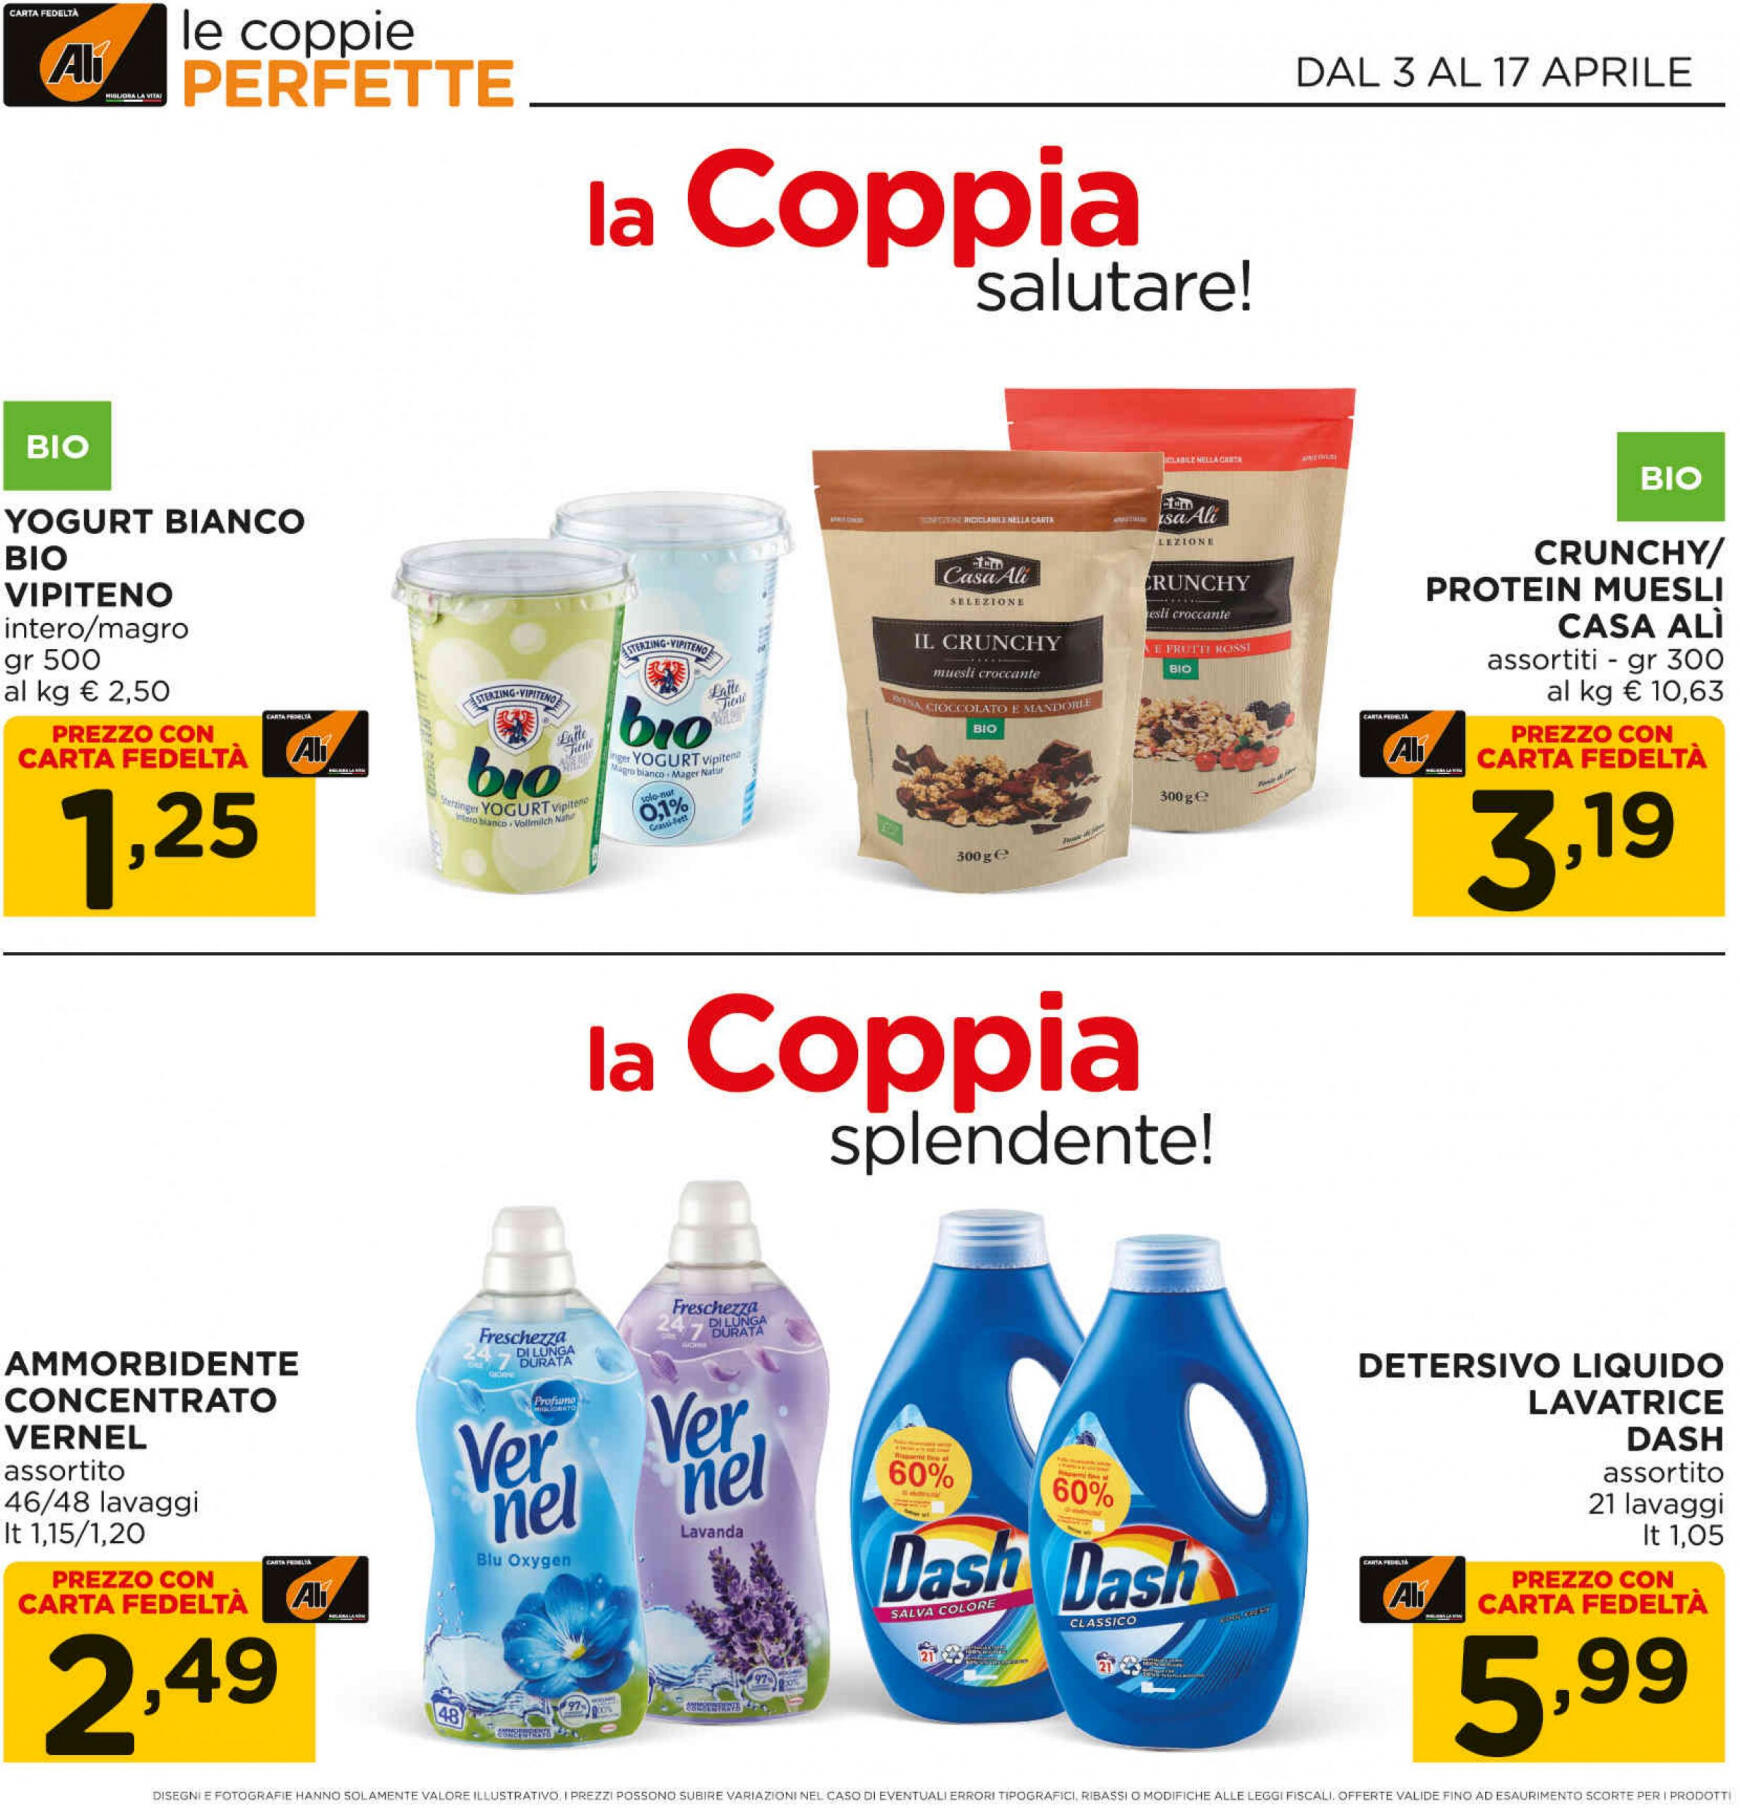 ali-aliper - Nuovo volantino Ali - Aliper - Coppie online 03.04. - 17.04. - page: 4